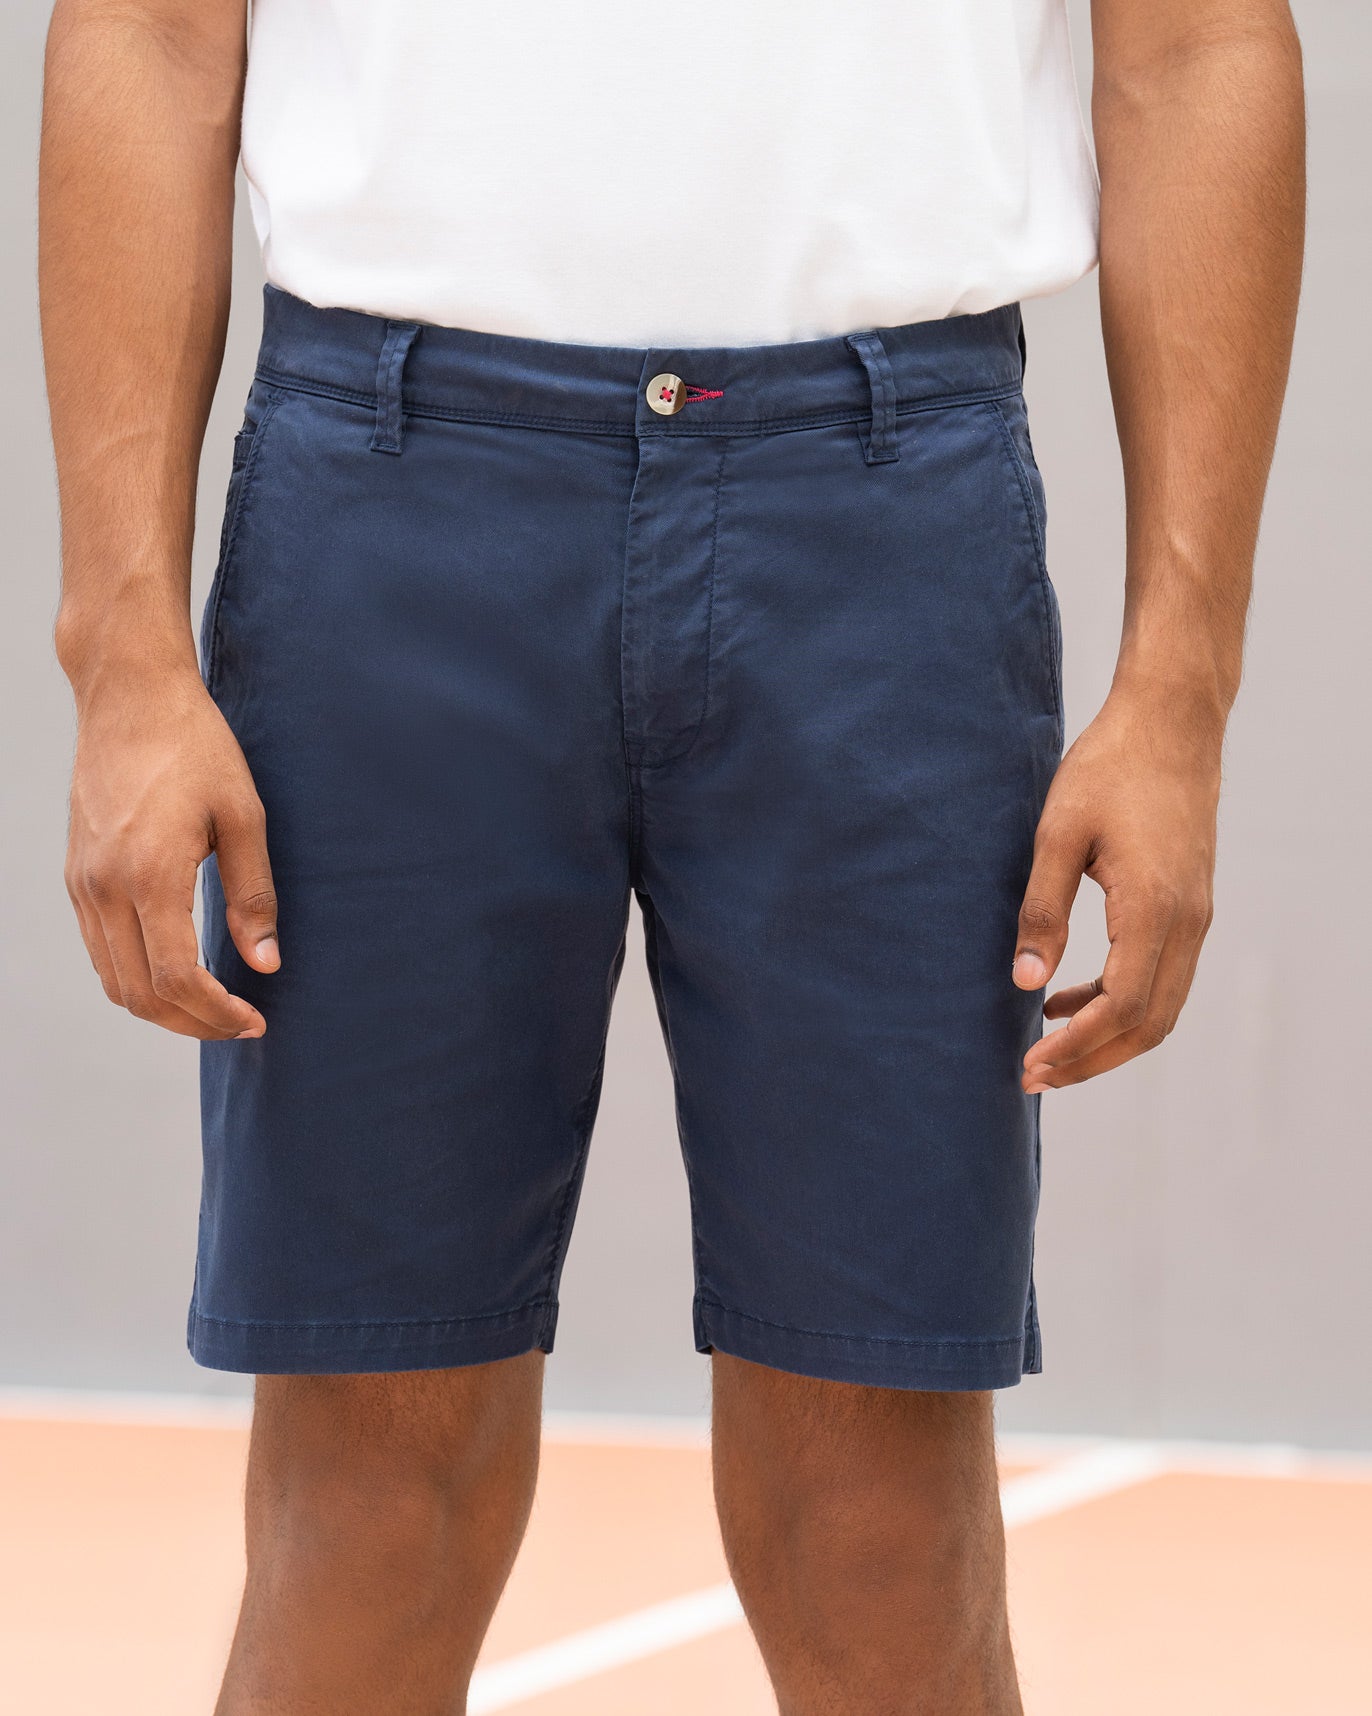 Nico Golf Shorts - Navy